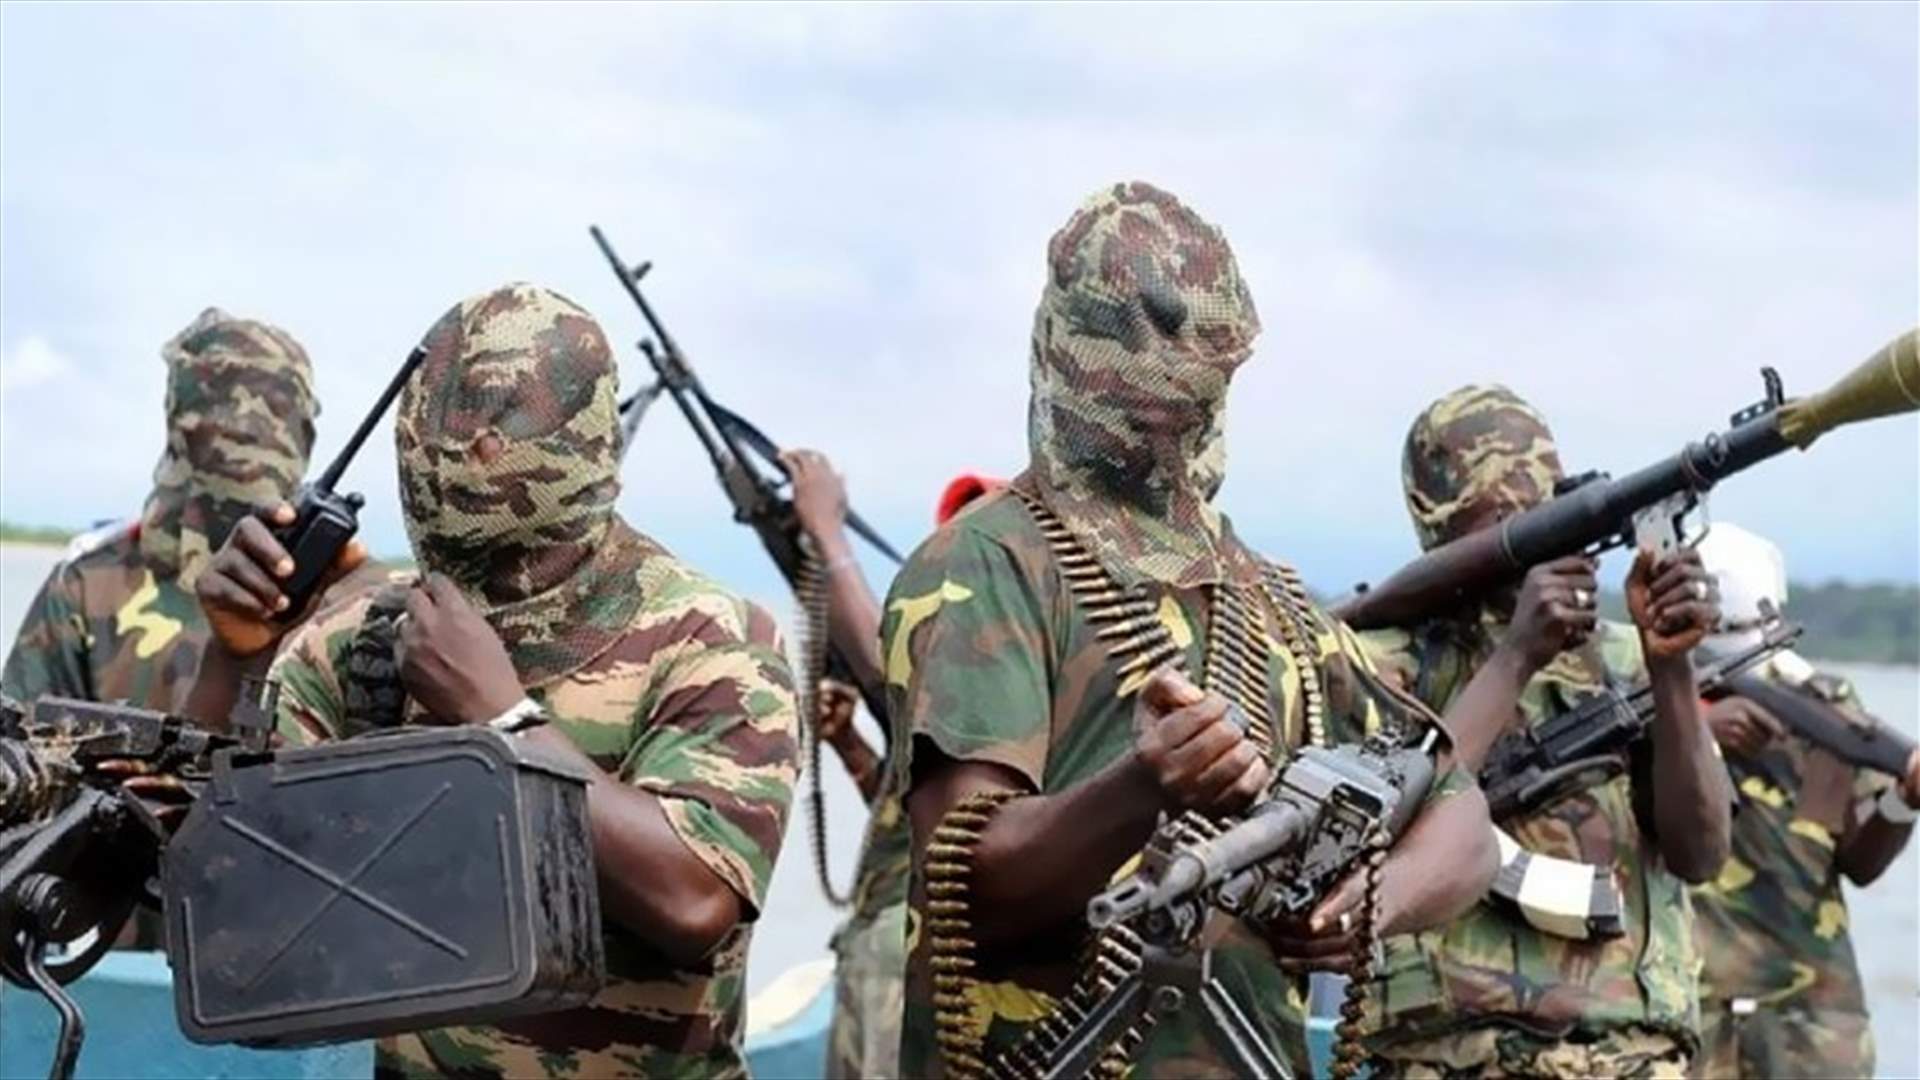 خمسة قتلى في نيجيريا بانفجار نسب الى بوكو حرام